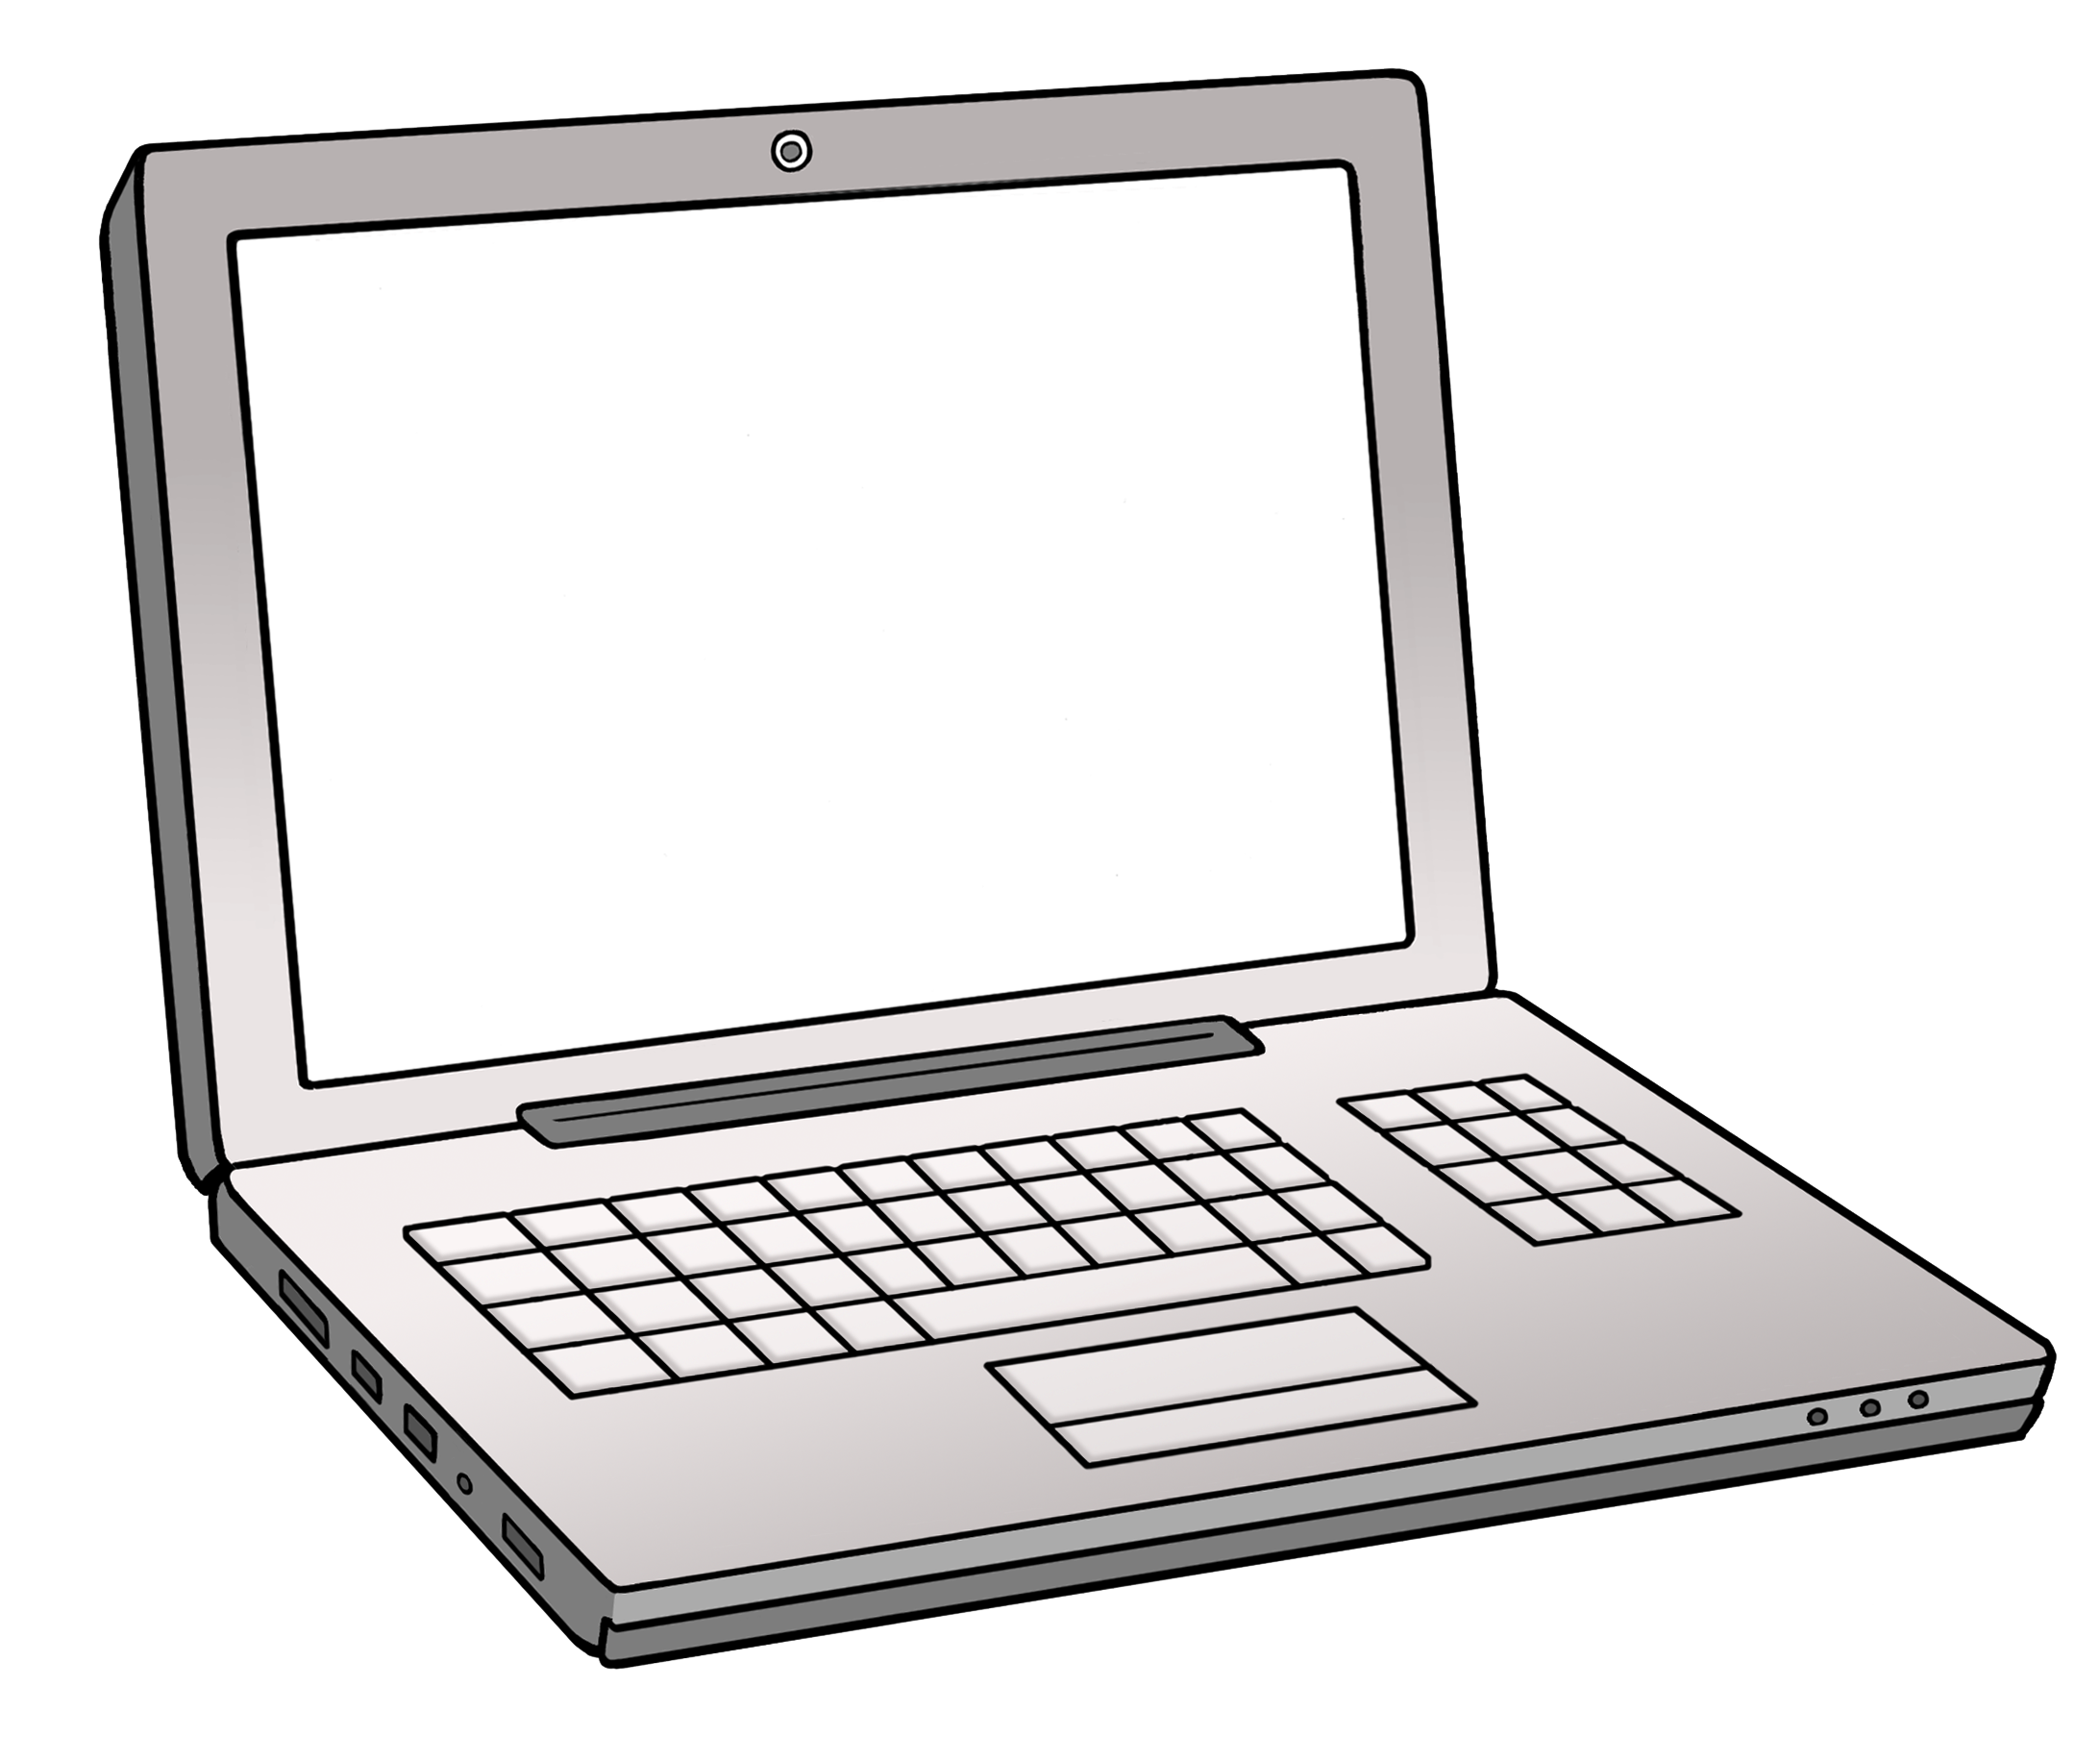 Leichte Sprache Bild: Ein aufgeklappter Laptop